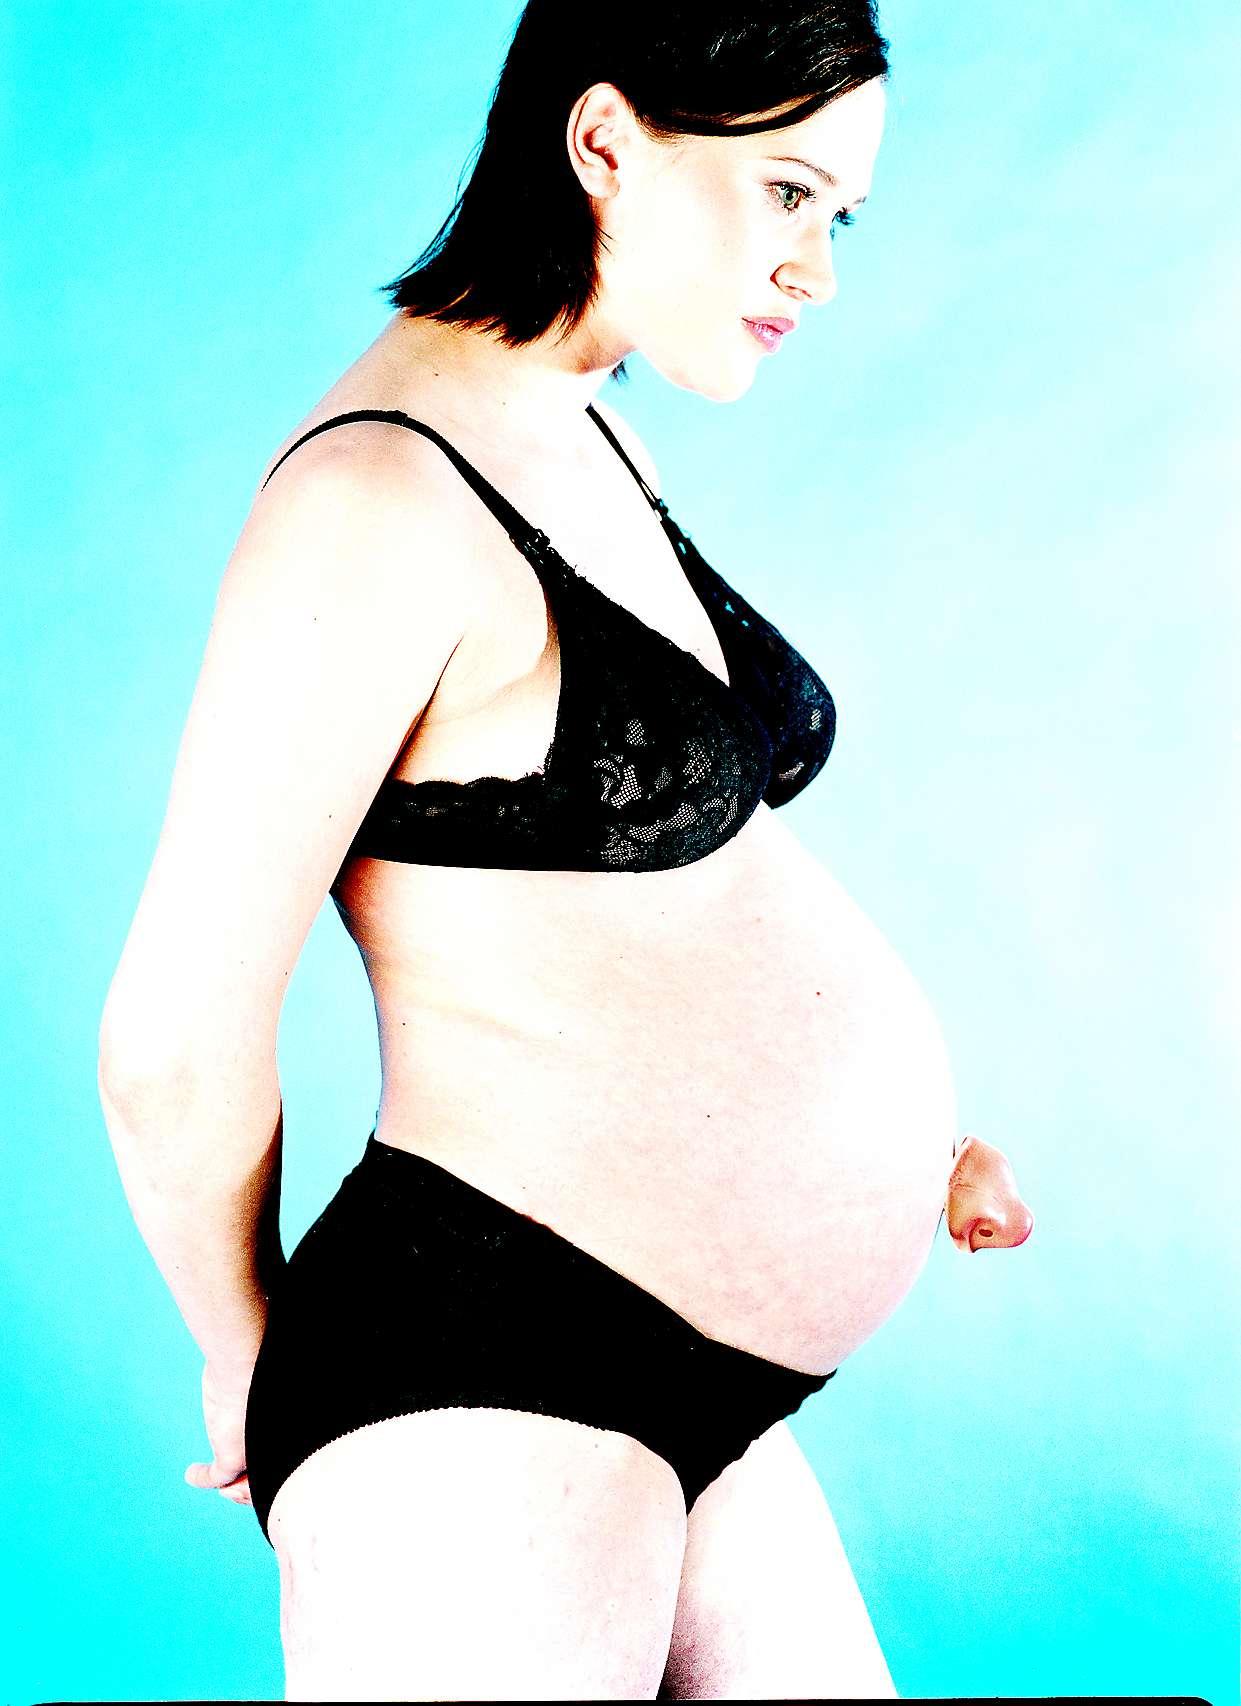 att kvinnor är omedvetna om sin graviditet är vanligare än man trott.